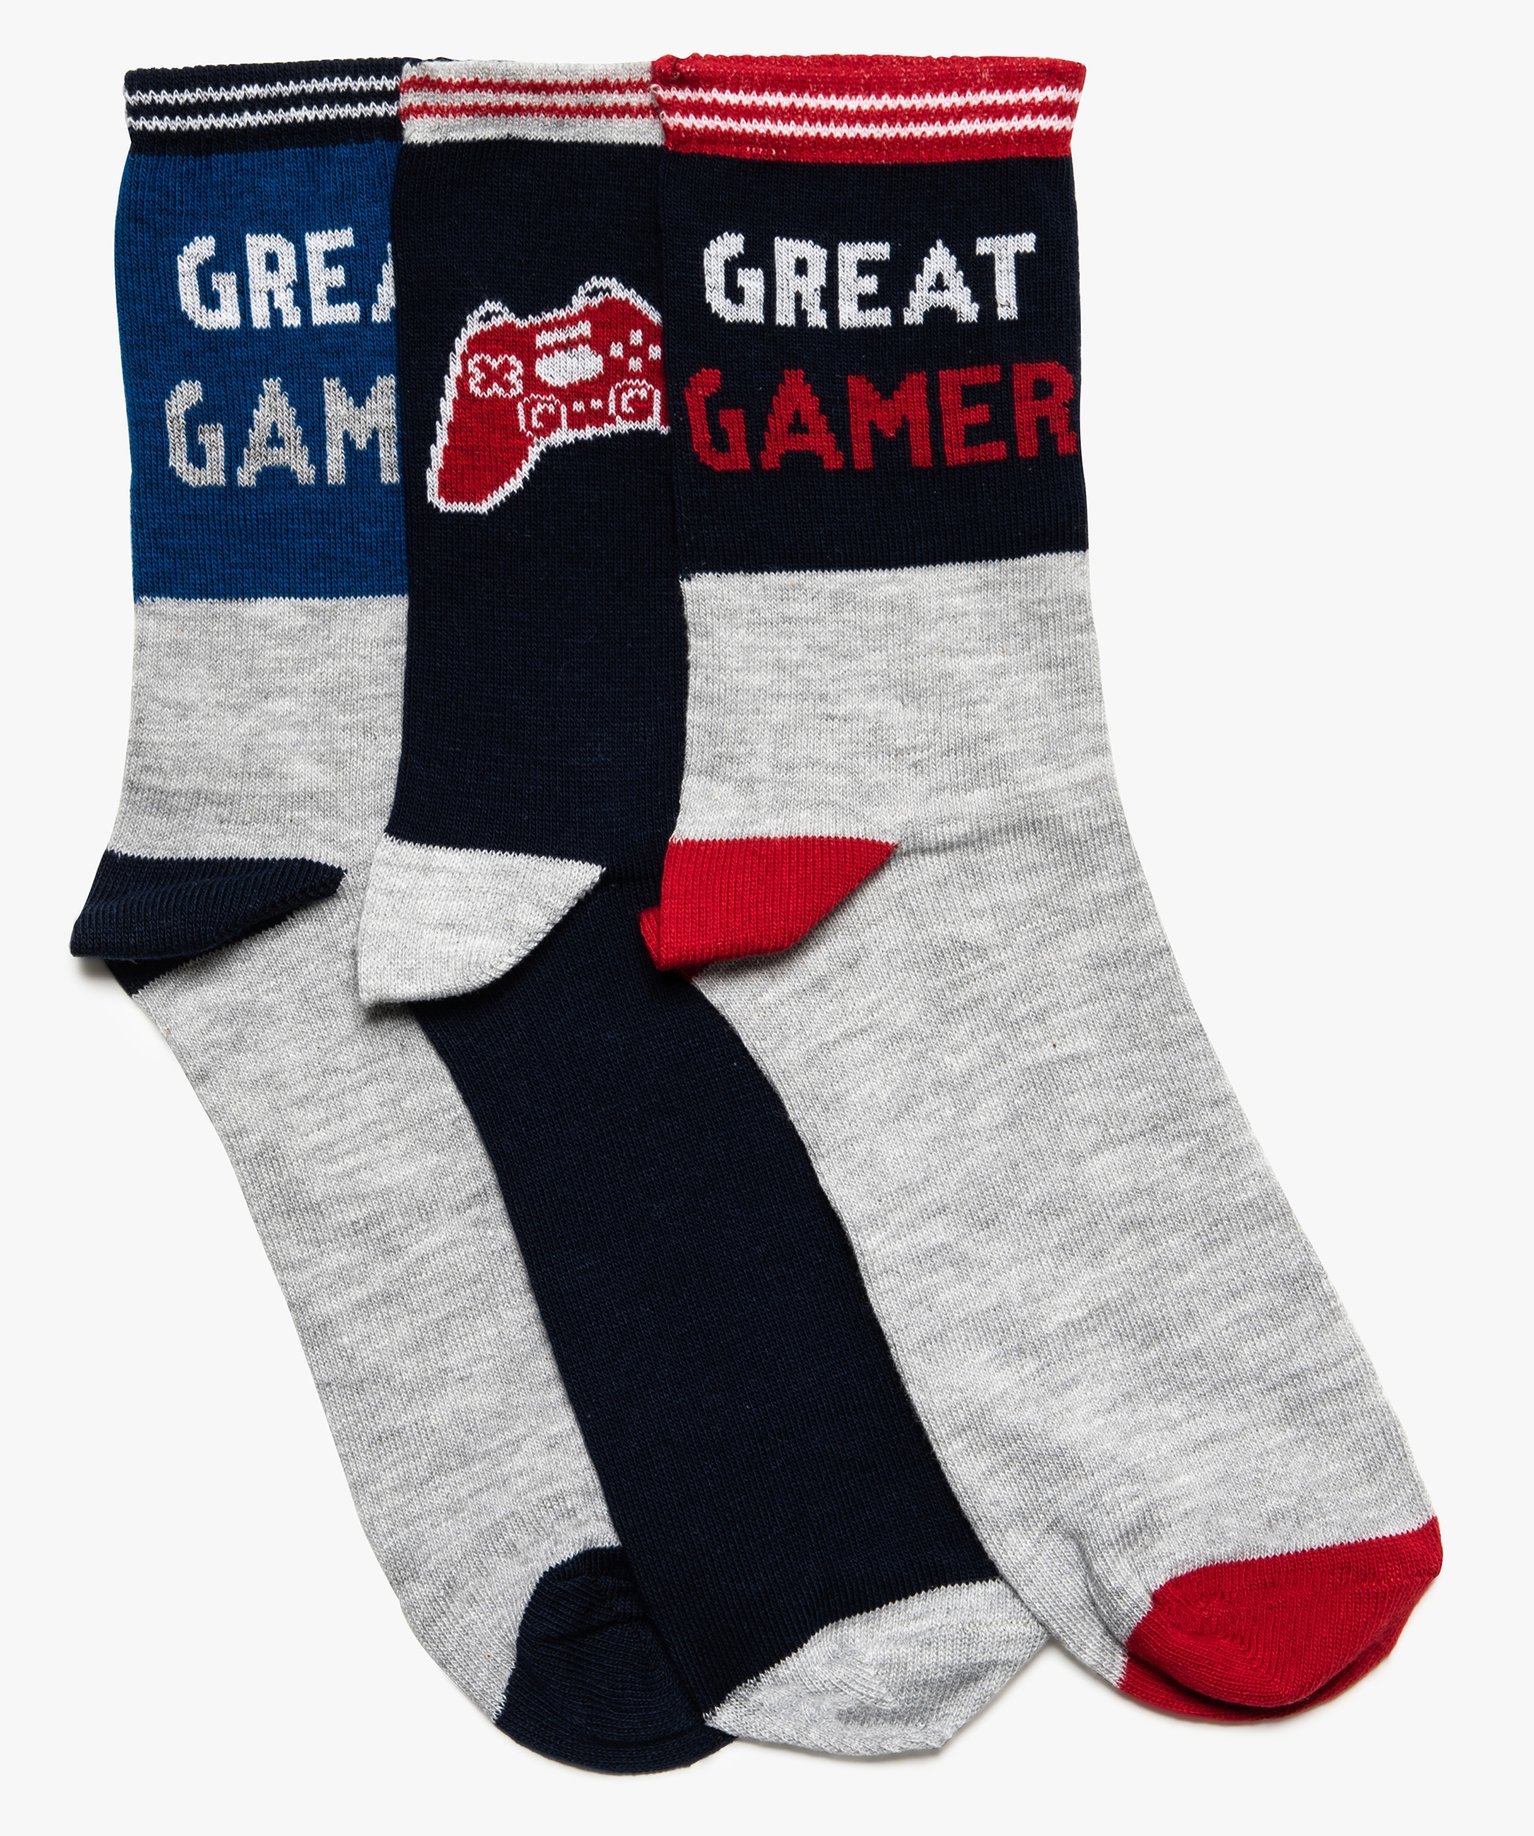 Gemo sous-vetements et nuit chaussettes hautes garcon theme jeux video (lot  de 3) gris chaussettes garcon